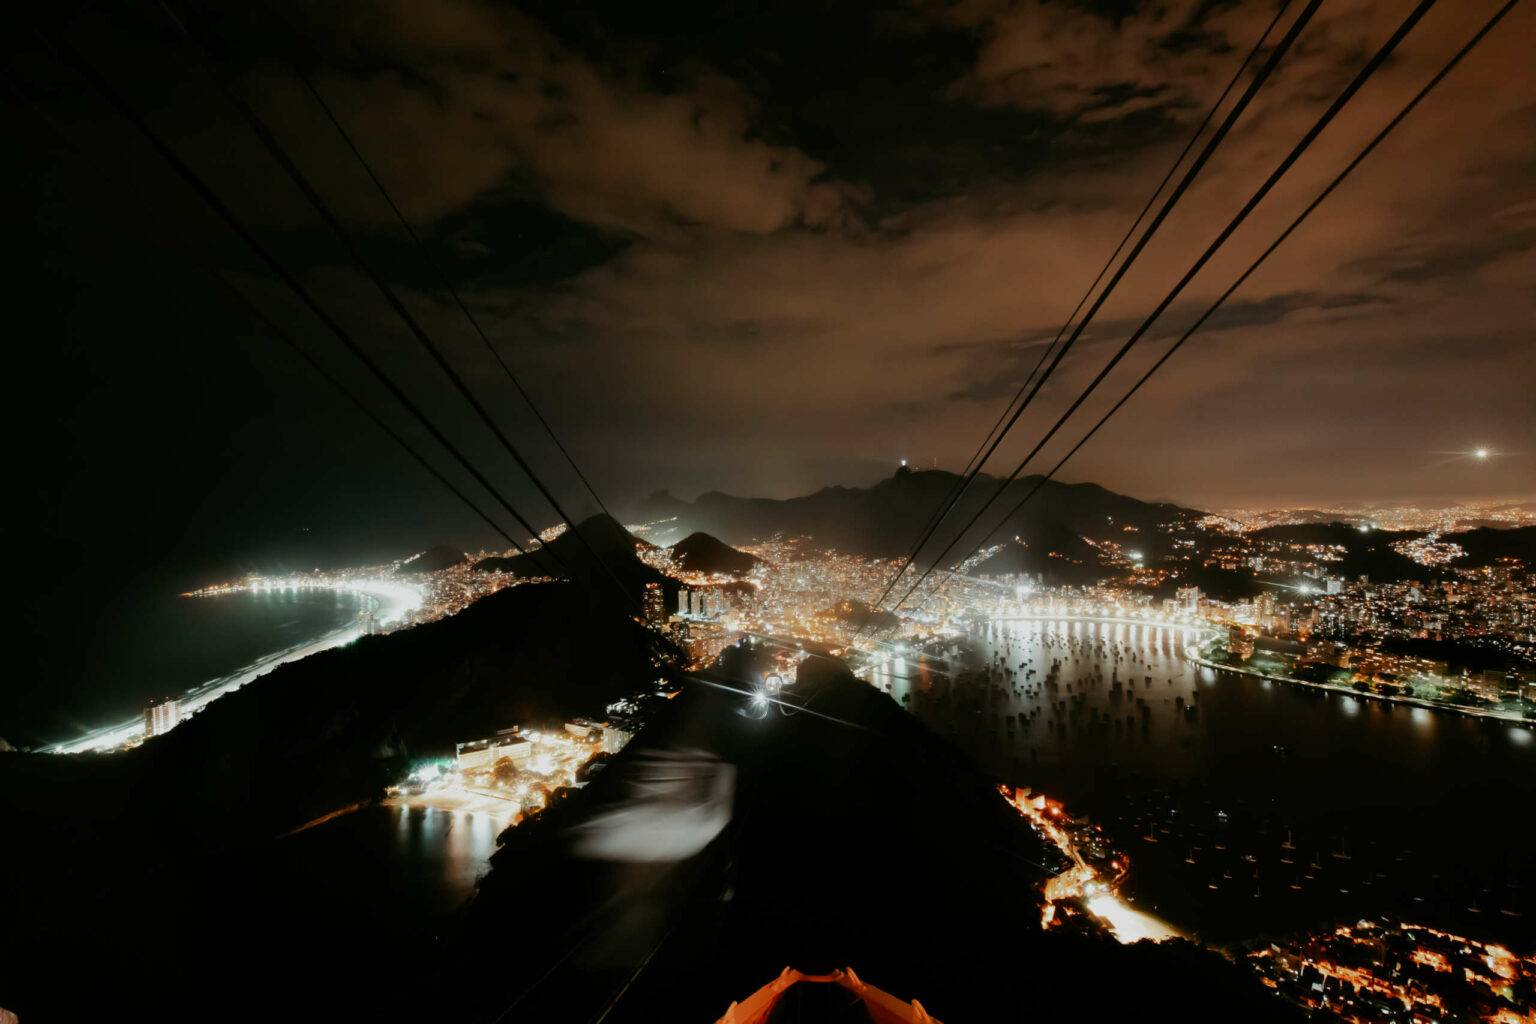 Rio bei Nacht: Wie funkelnde Sterne leuchten die Lichter der Stadt.